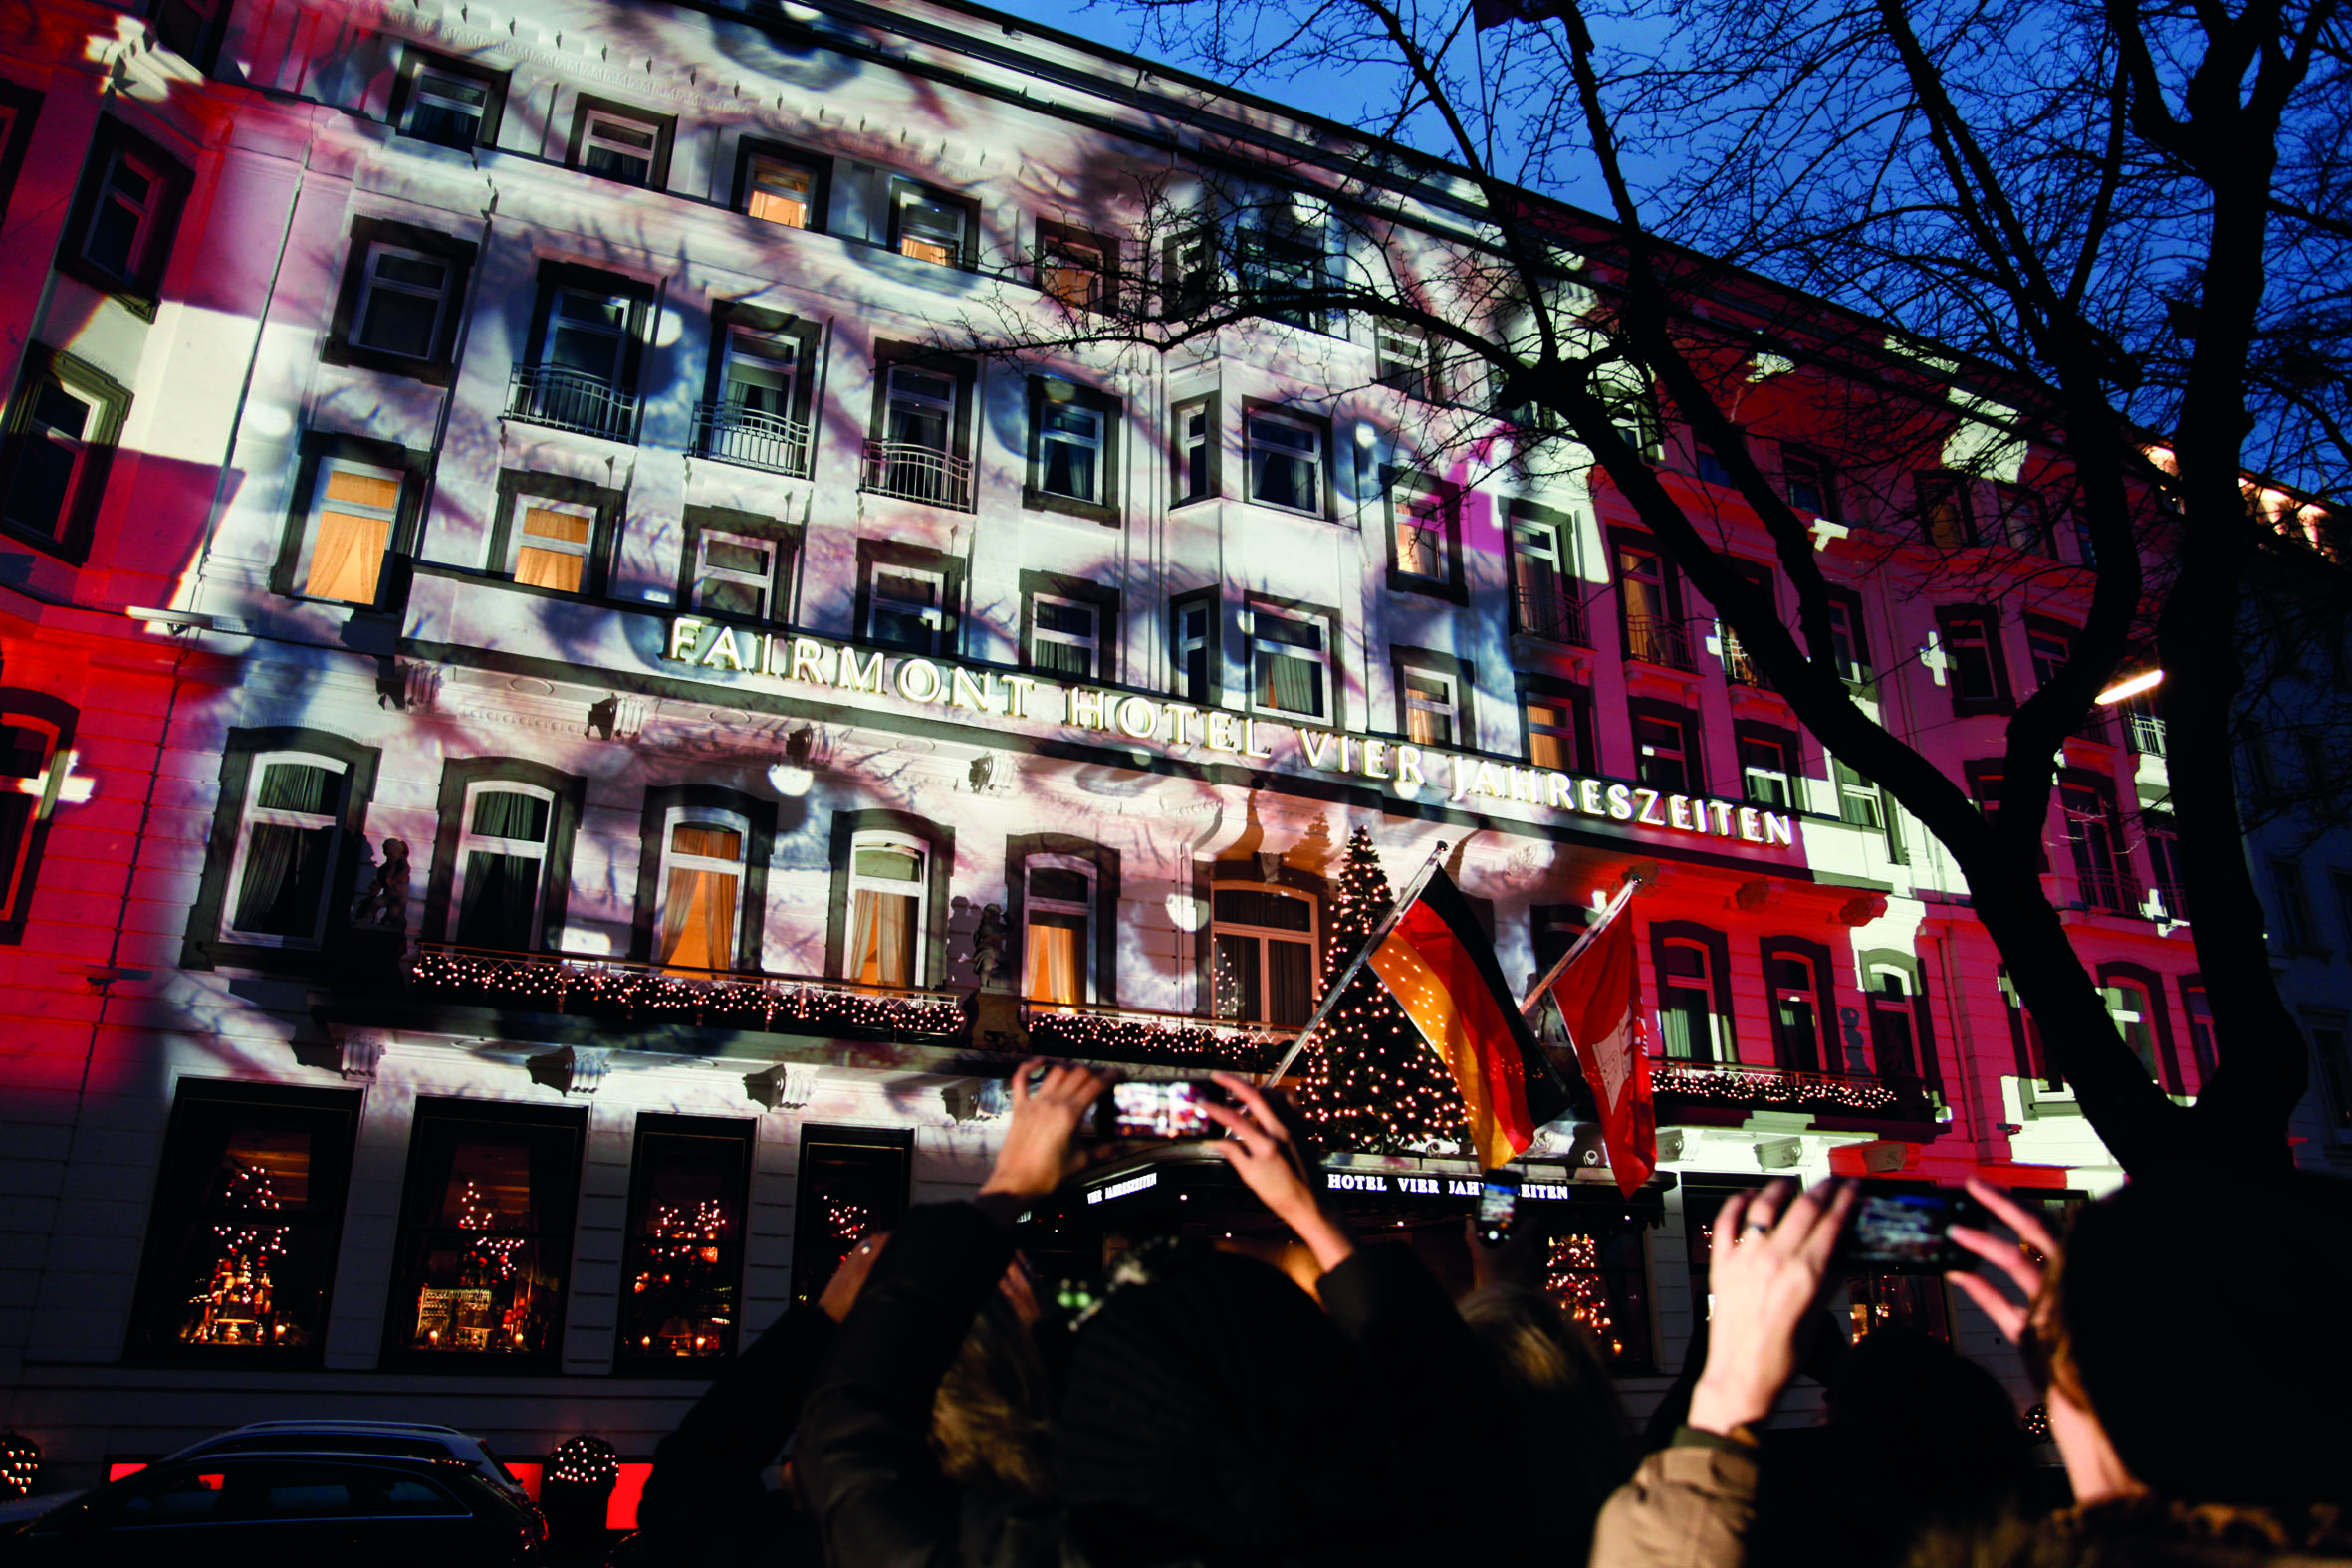 Spektakuläre Lichtinstallation am Fairmont Hotel Vier Jahreszeiten Hamburg – PR-Aktion von Swiss für mehr Achtsamkeit im Umgang miteinander